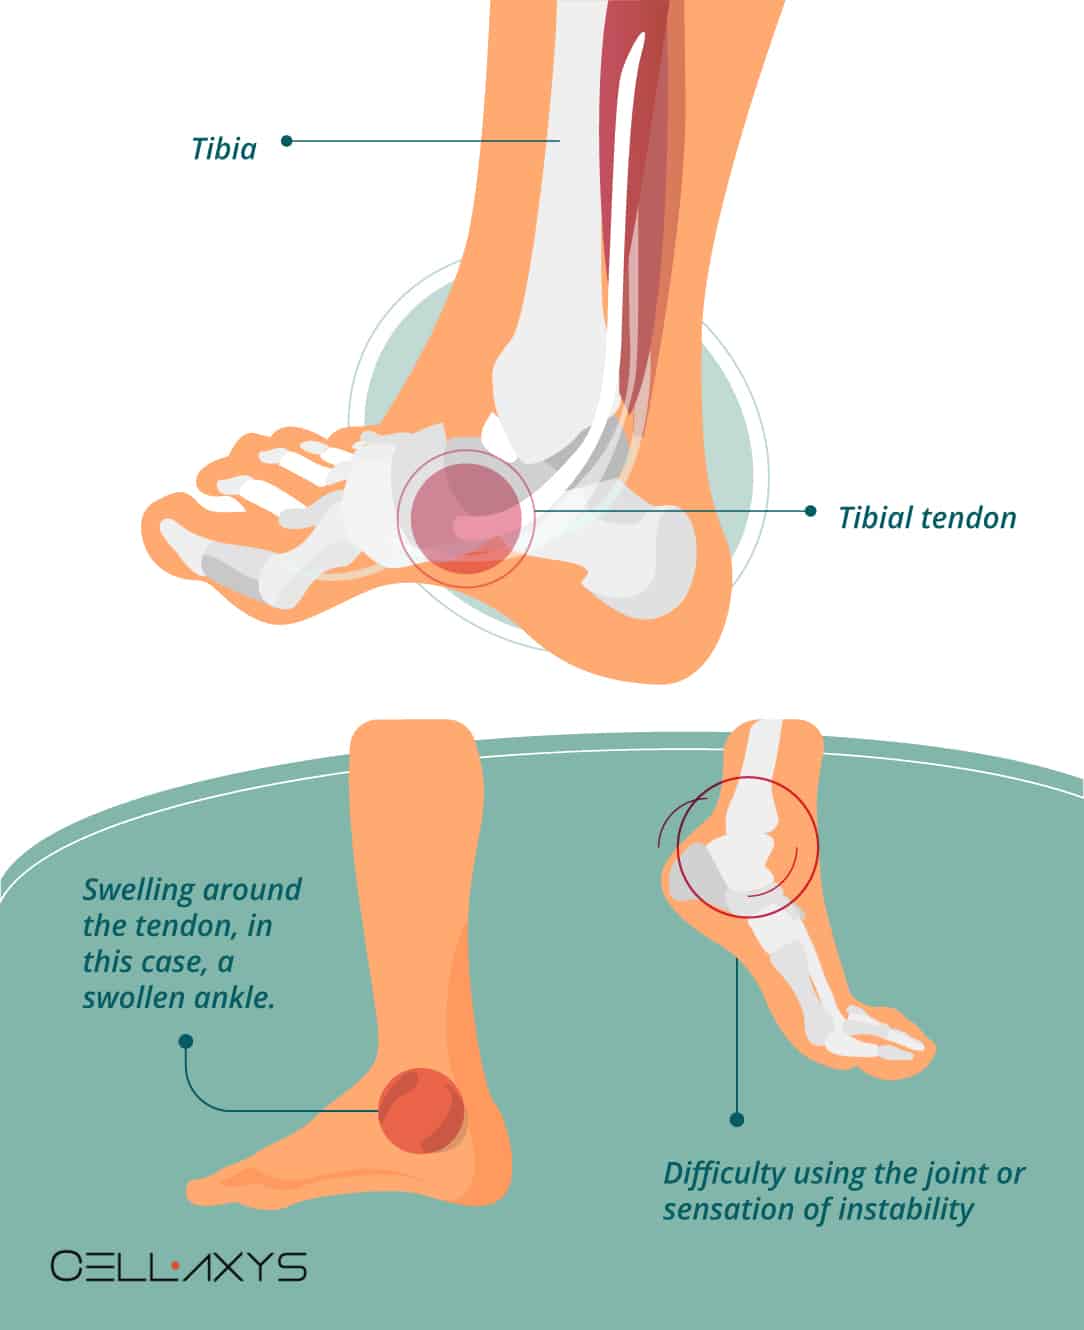 birkenstock for posterior tibial tendonitis